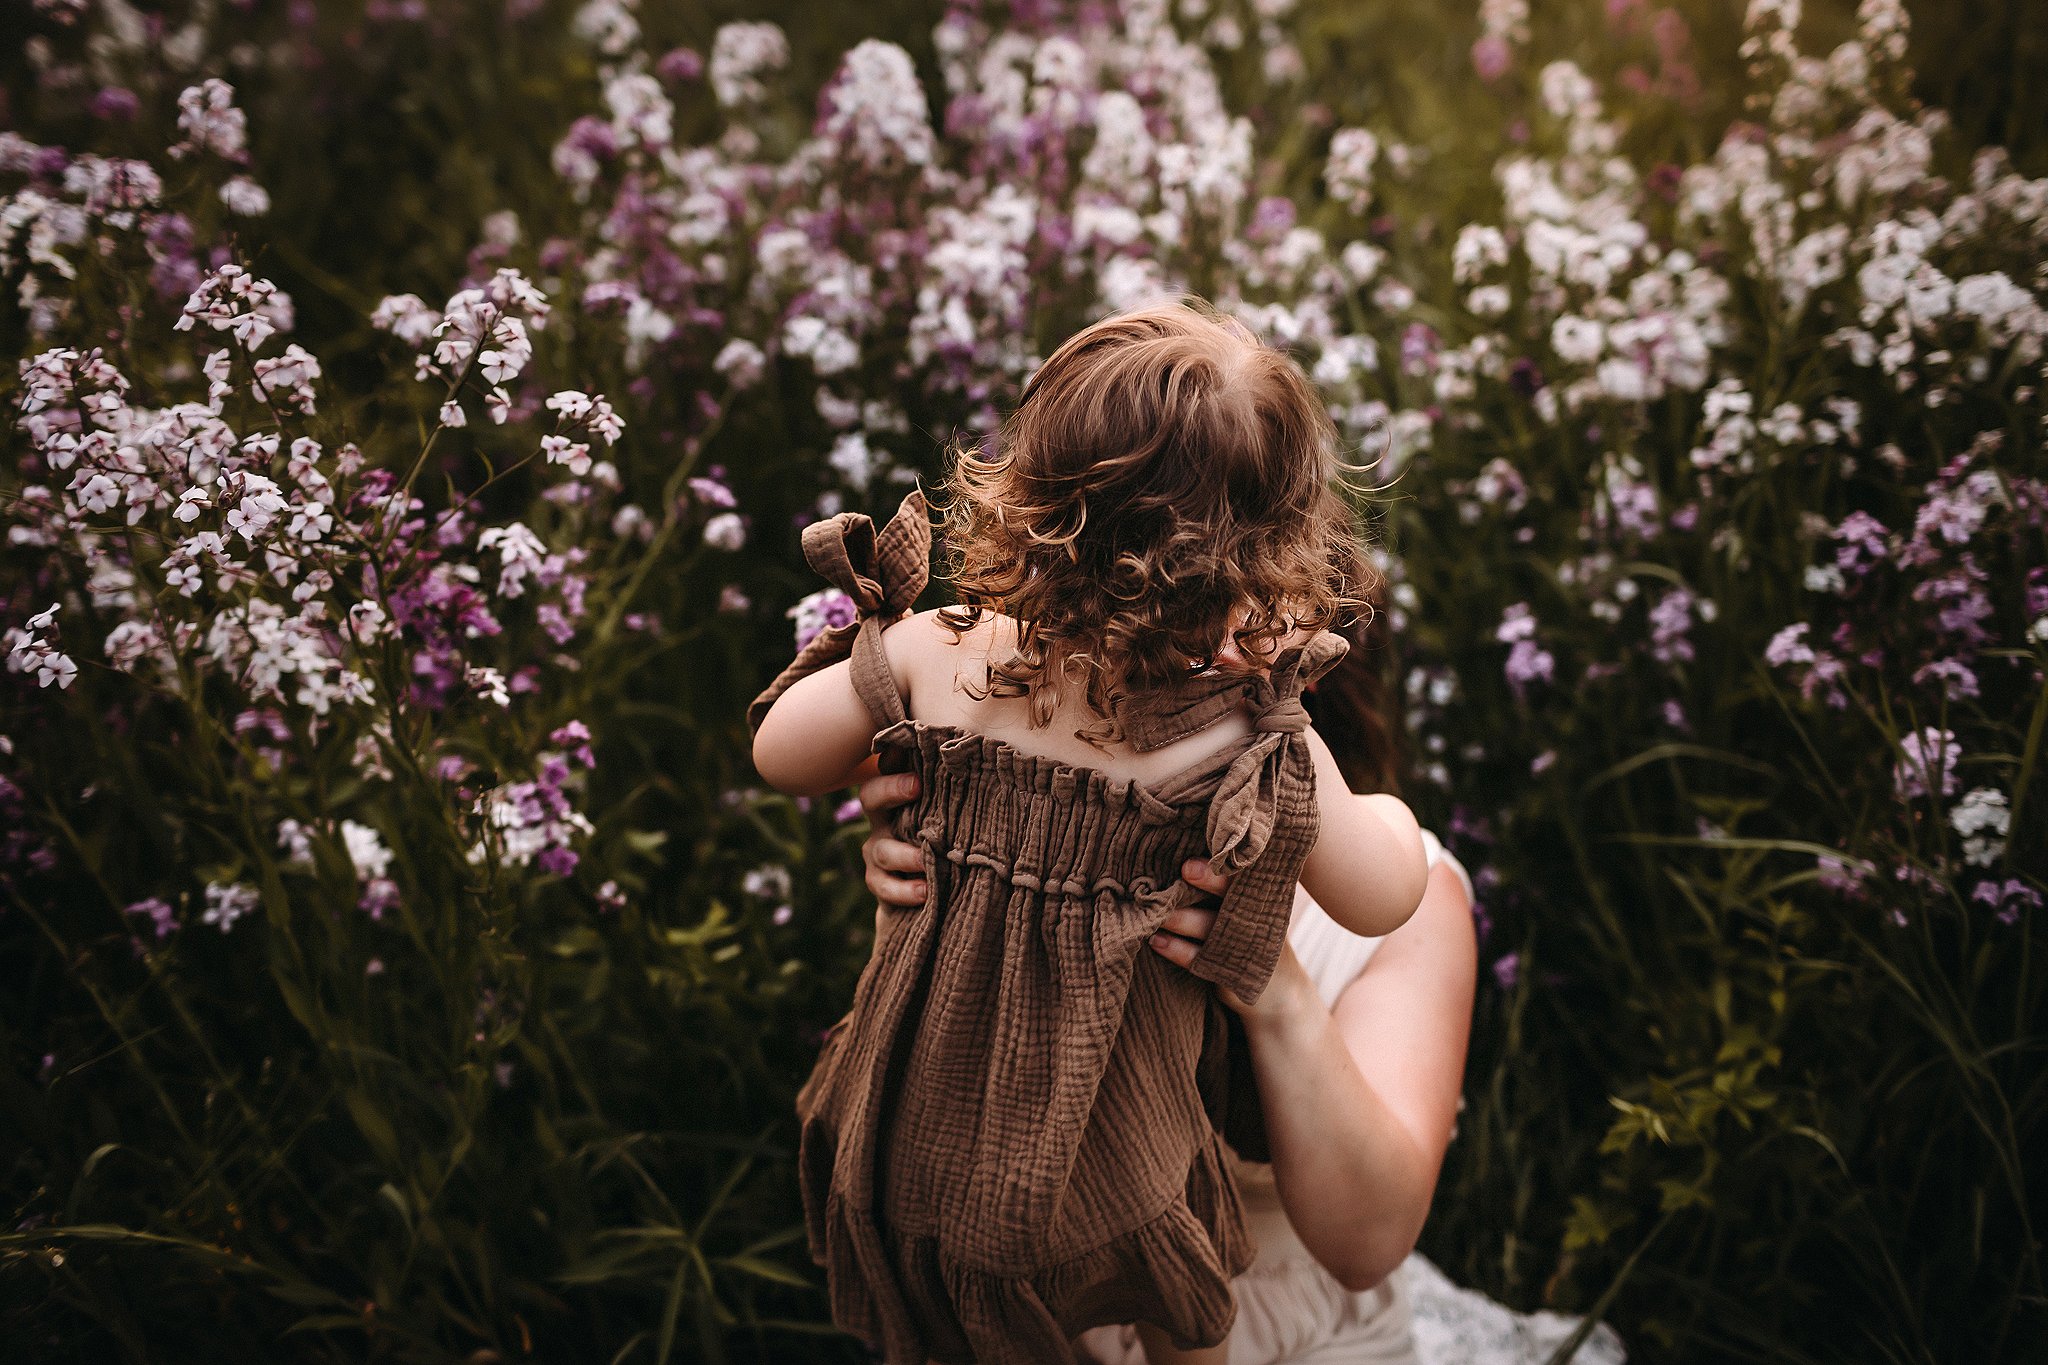 Little girl dancing in field of flowers